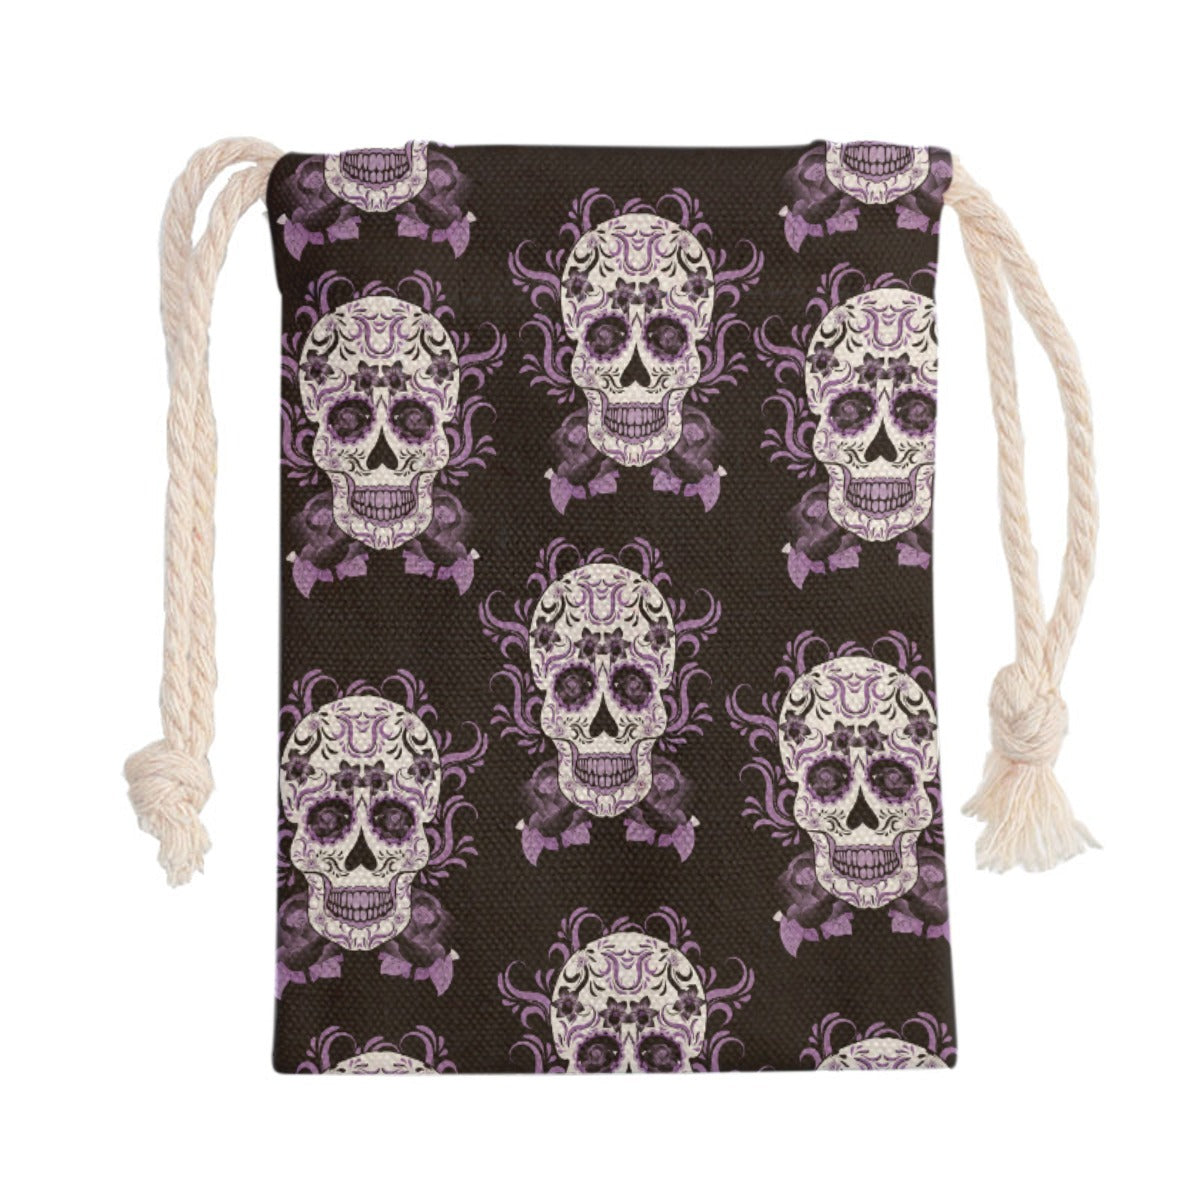 Day of the dead Drawstring Bag, Dia de los muertos handbag shoulder bag purse